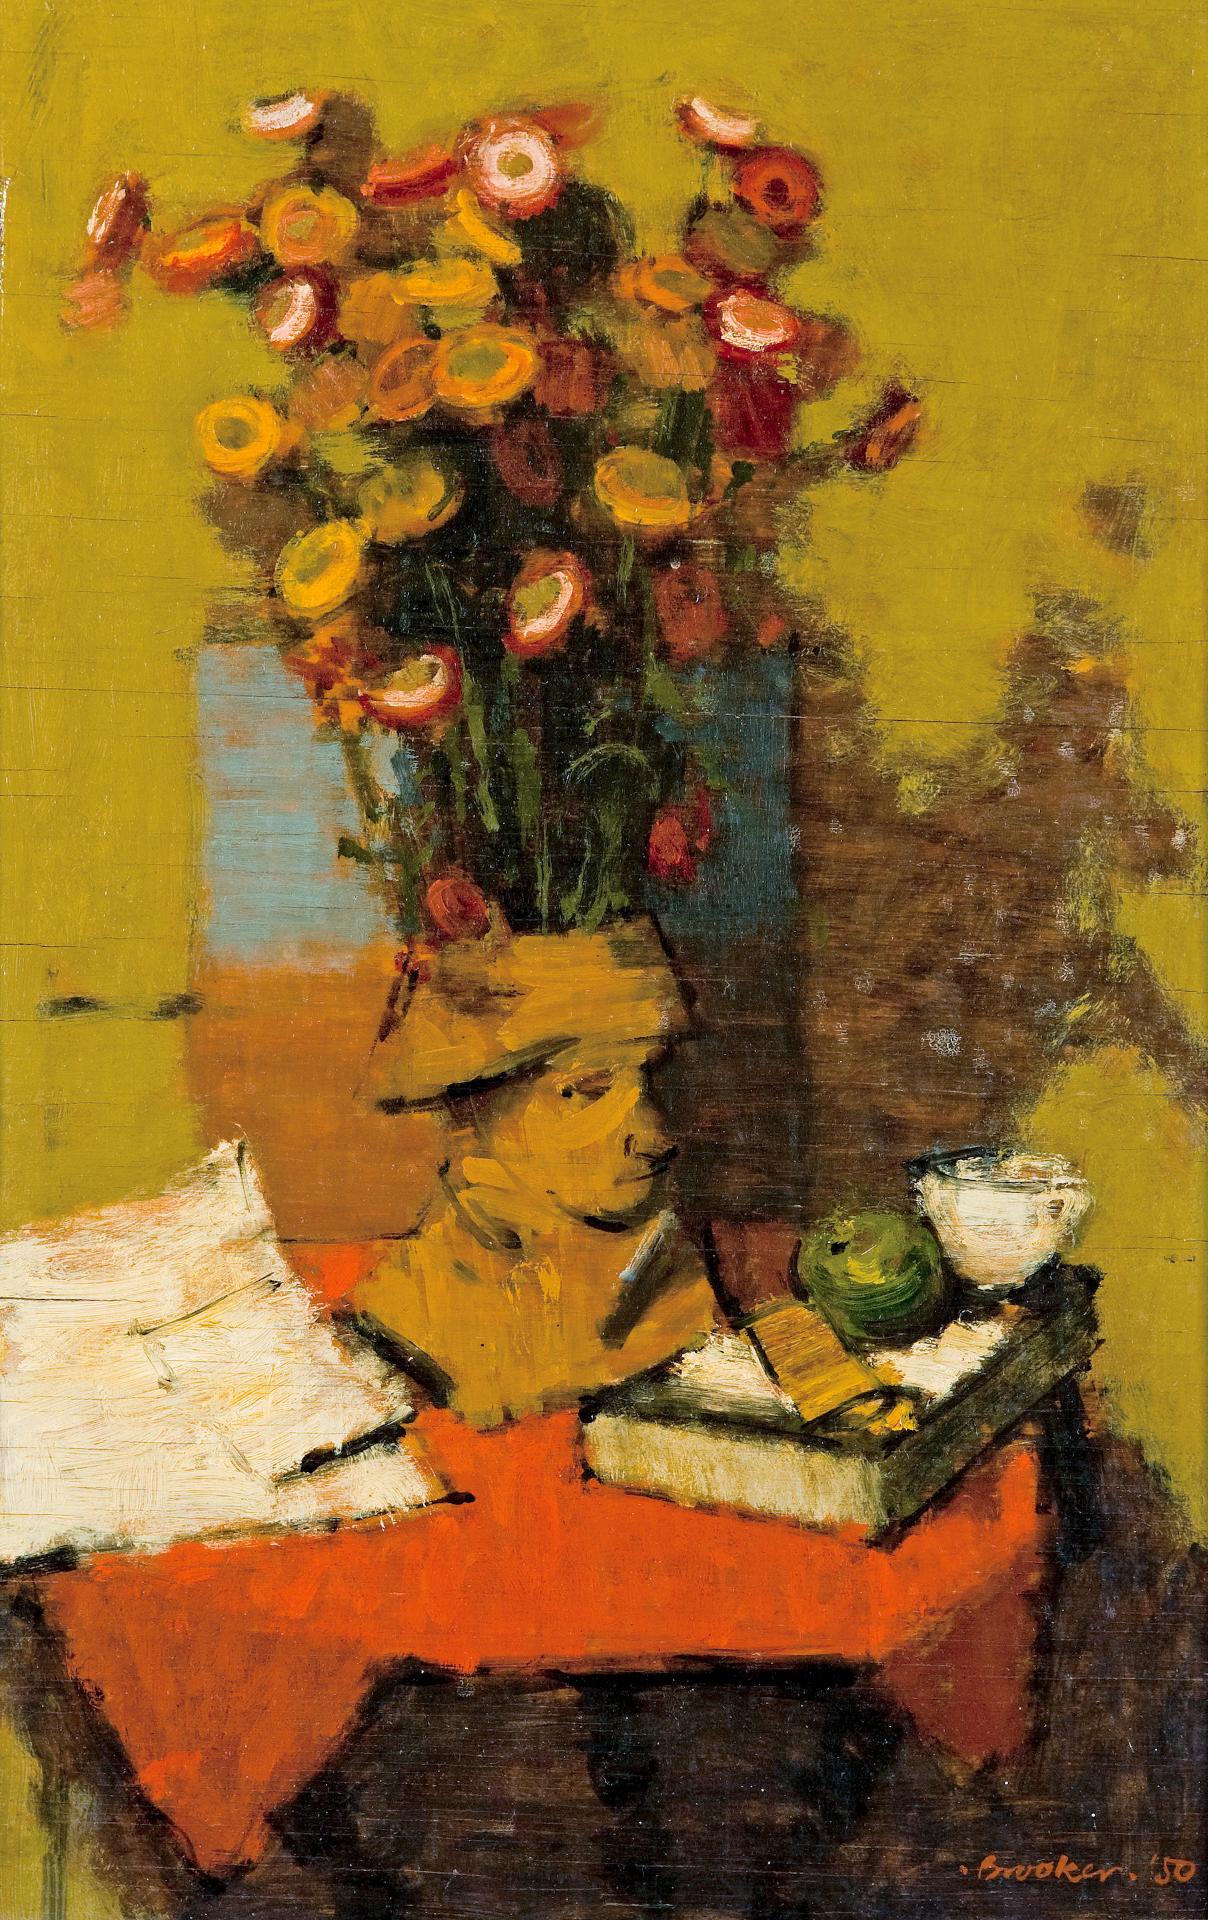 William Brooker (1918-1983) - Everlasting flowers